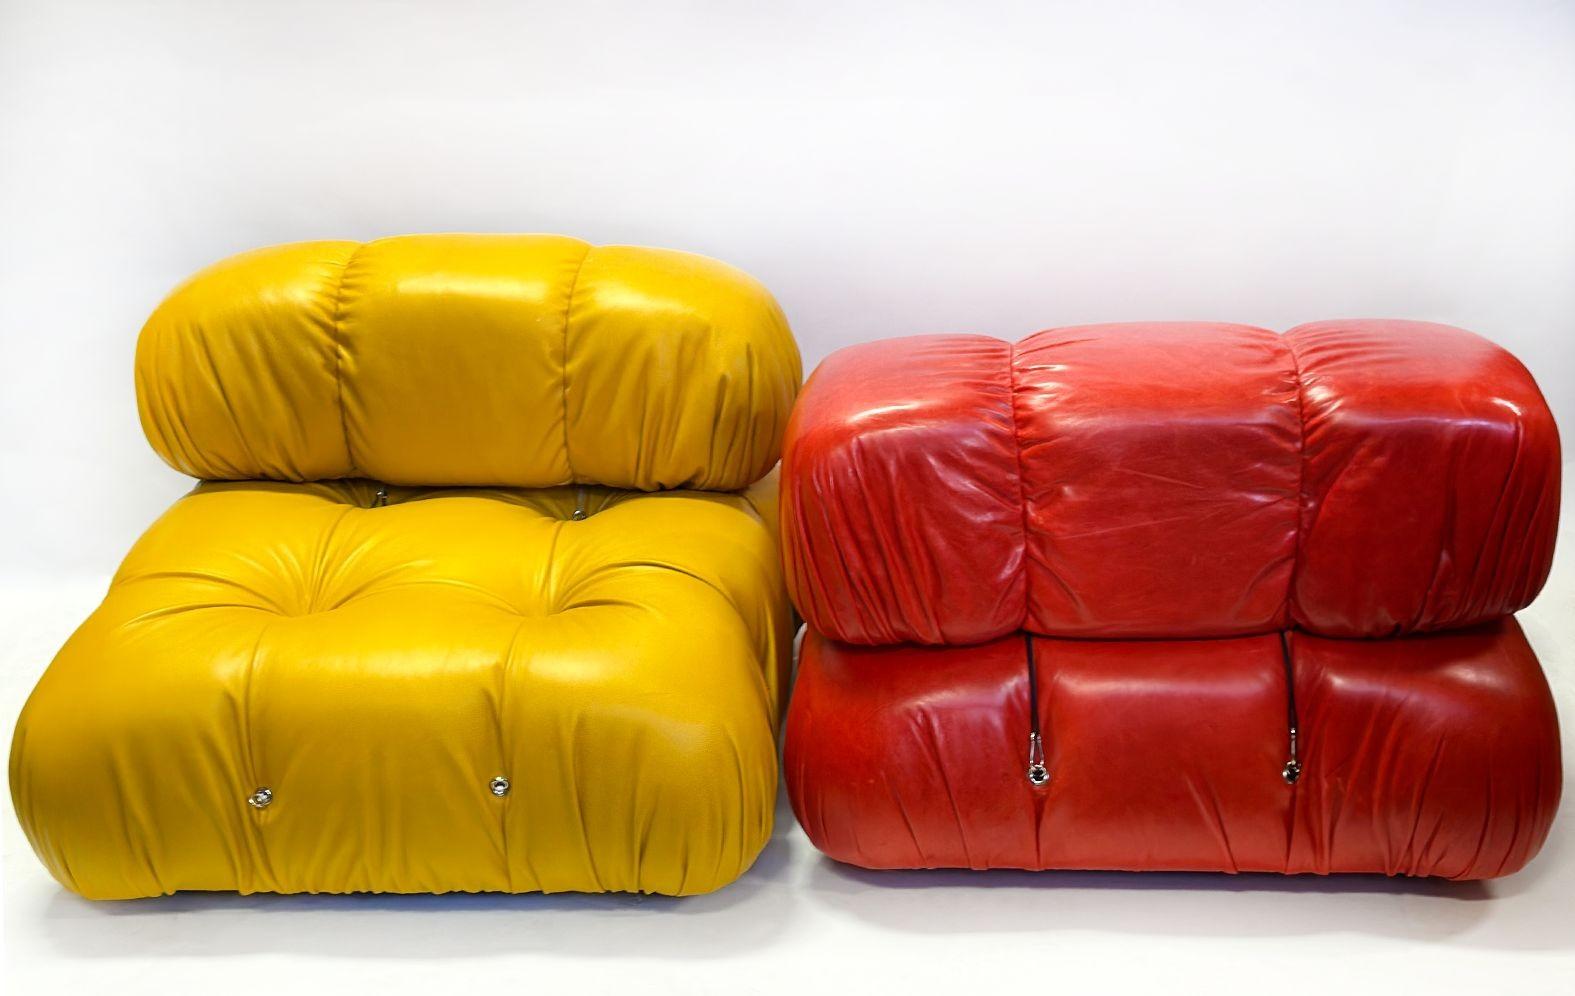 Canapé sectionnel en cuir coloré à quatre places fabriqué par Mario Bellini dans les années 1970. Chaque siège amovible se distingue par ses couleurs uniques : orange vif, turquoise foncé, jaune miel et rouge vif. La fonction réglable permet une